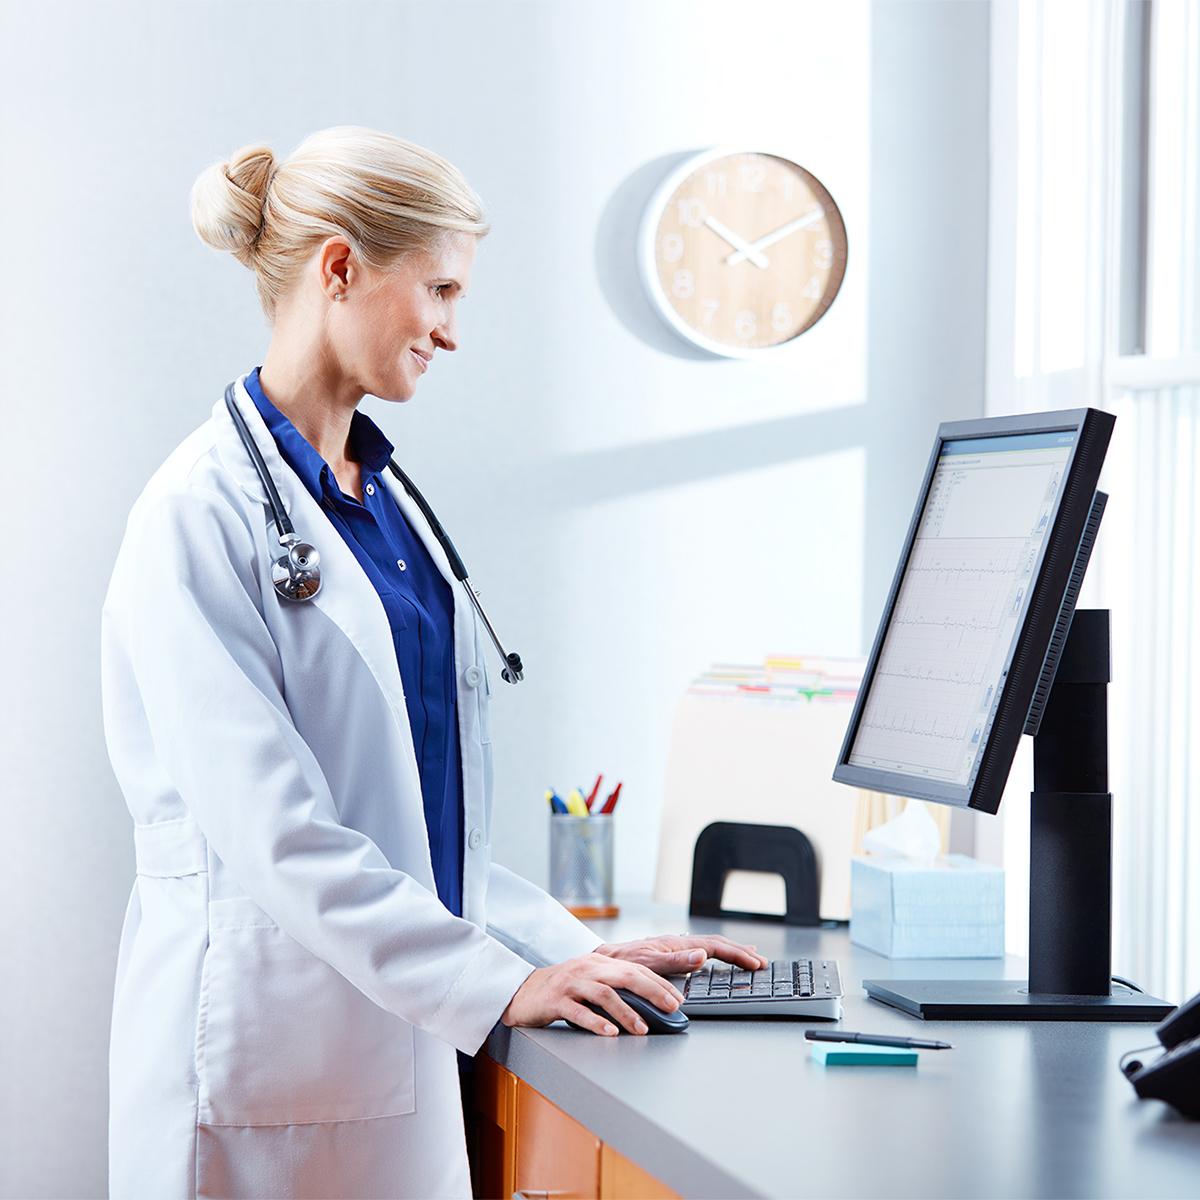 Un médecin examine les données relatives à un patient sur un écran d’ordinateur en souriant